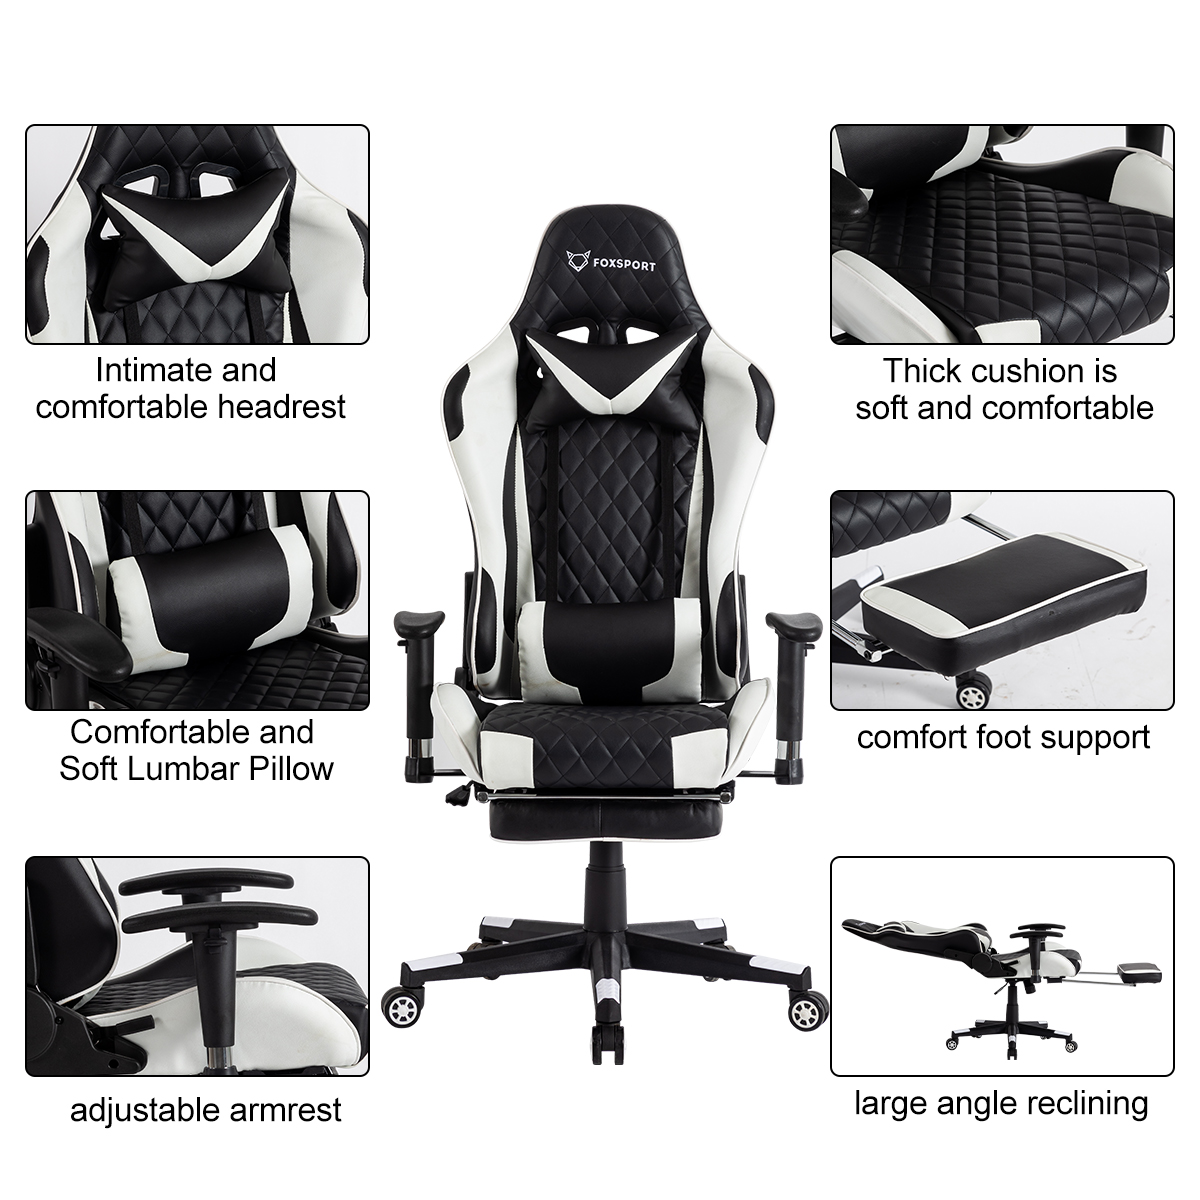 mit FOXSPORT Gaming-Stuhl, schwarz/weiß Beinstütze weiß